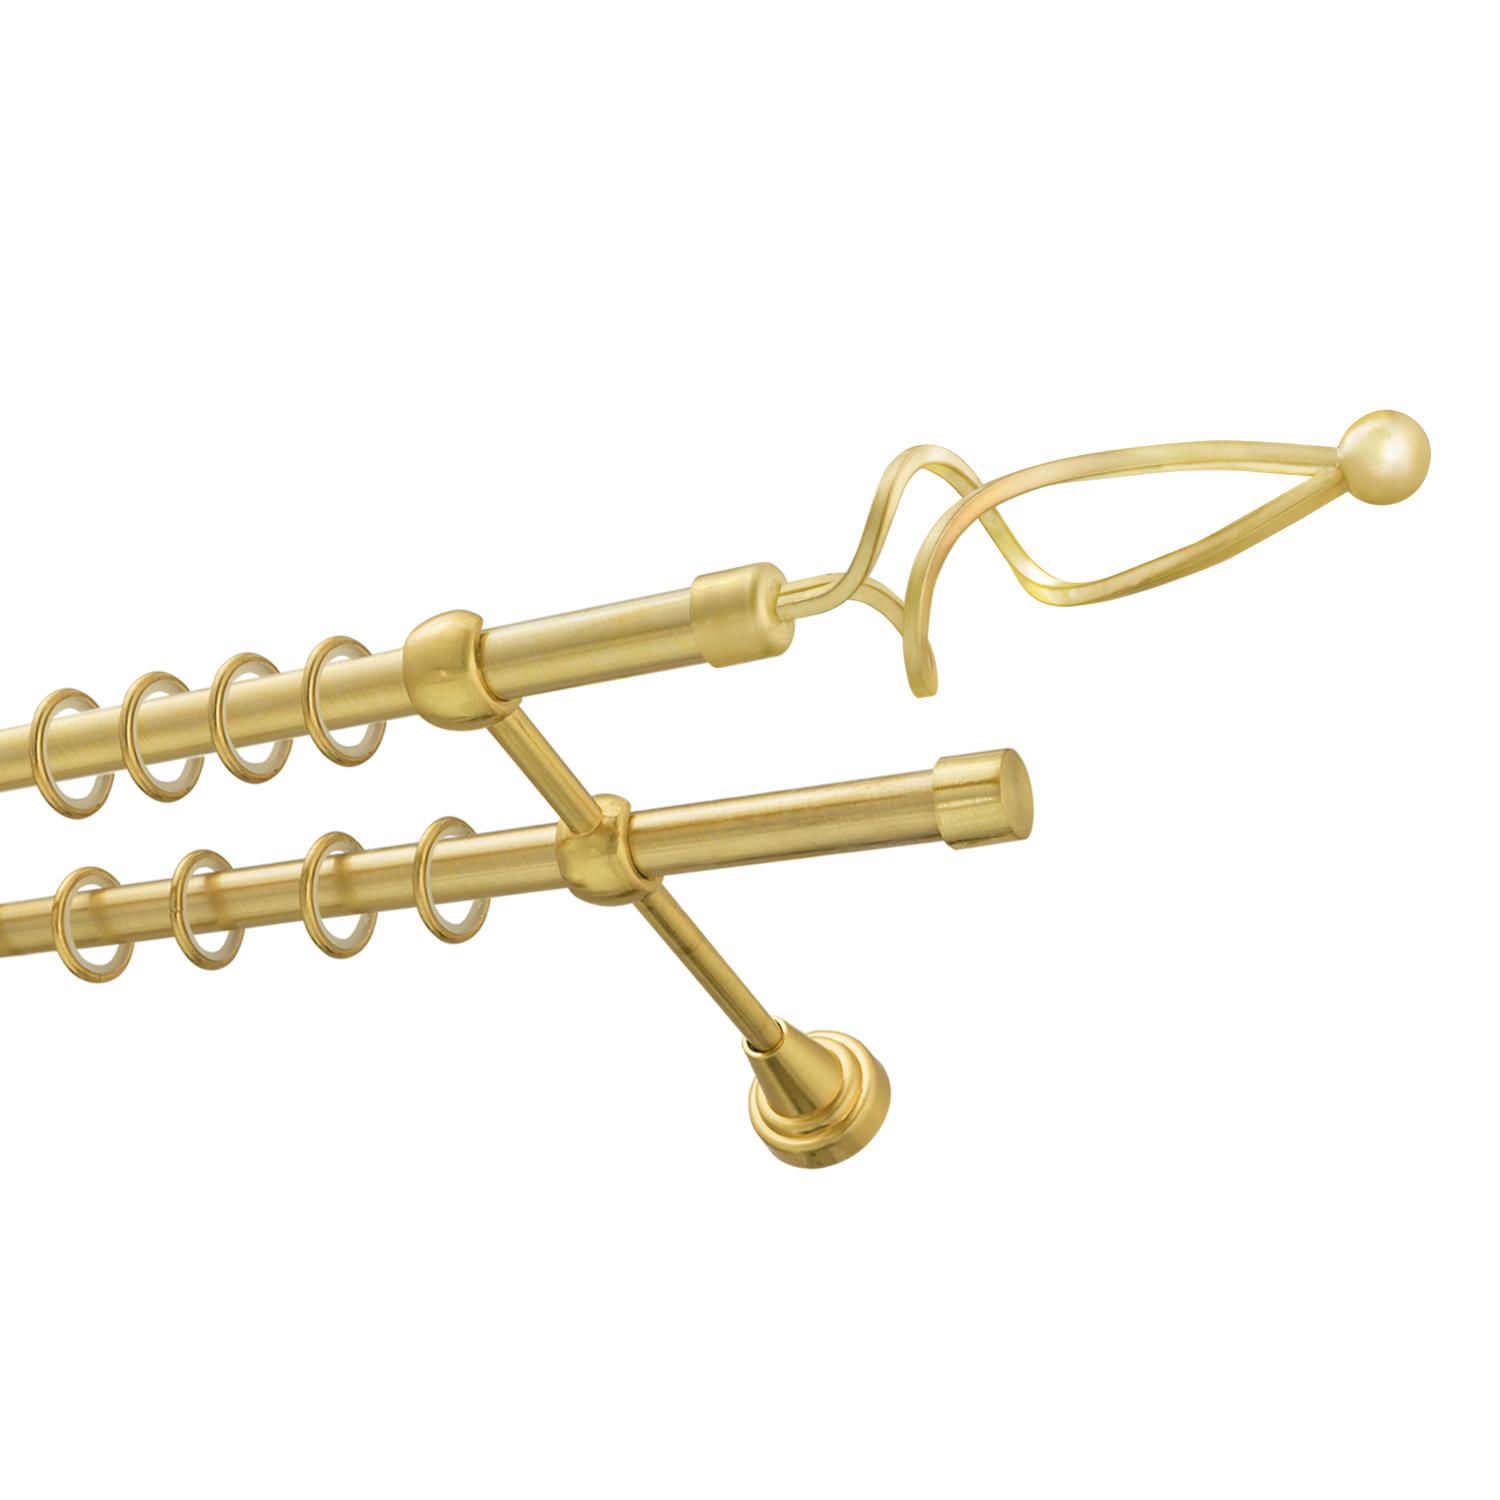 Металлический карниз для штор Жемчужина, двухрядный 16/16 мм, золото, гладкая штанга, длина 140 см - фото Wikidecor.ru